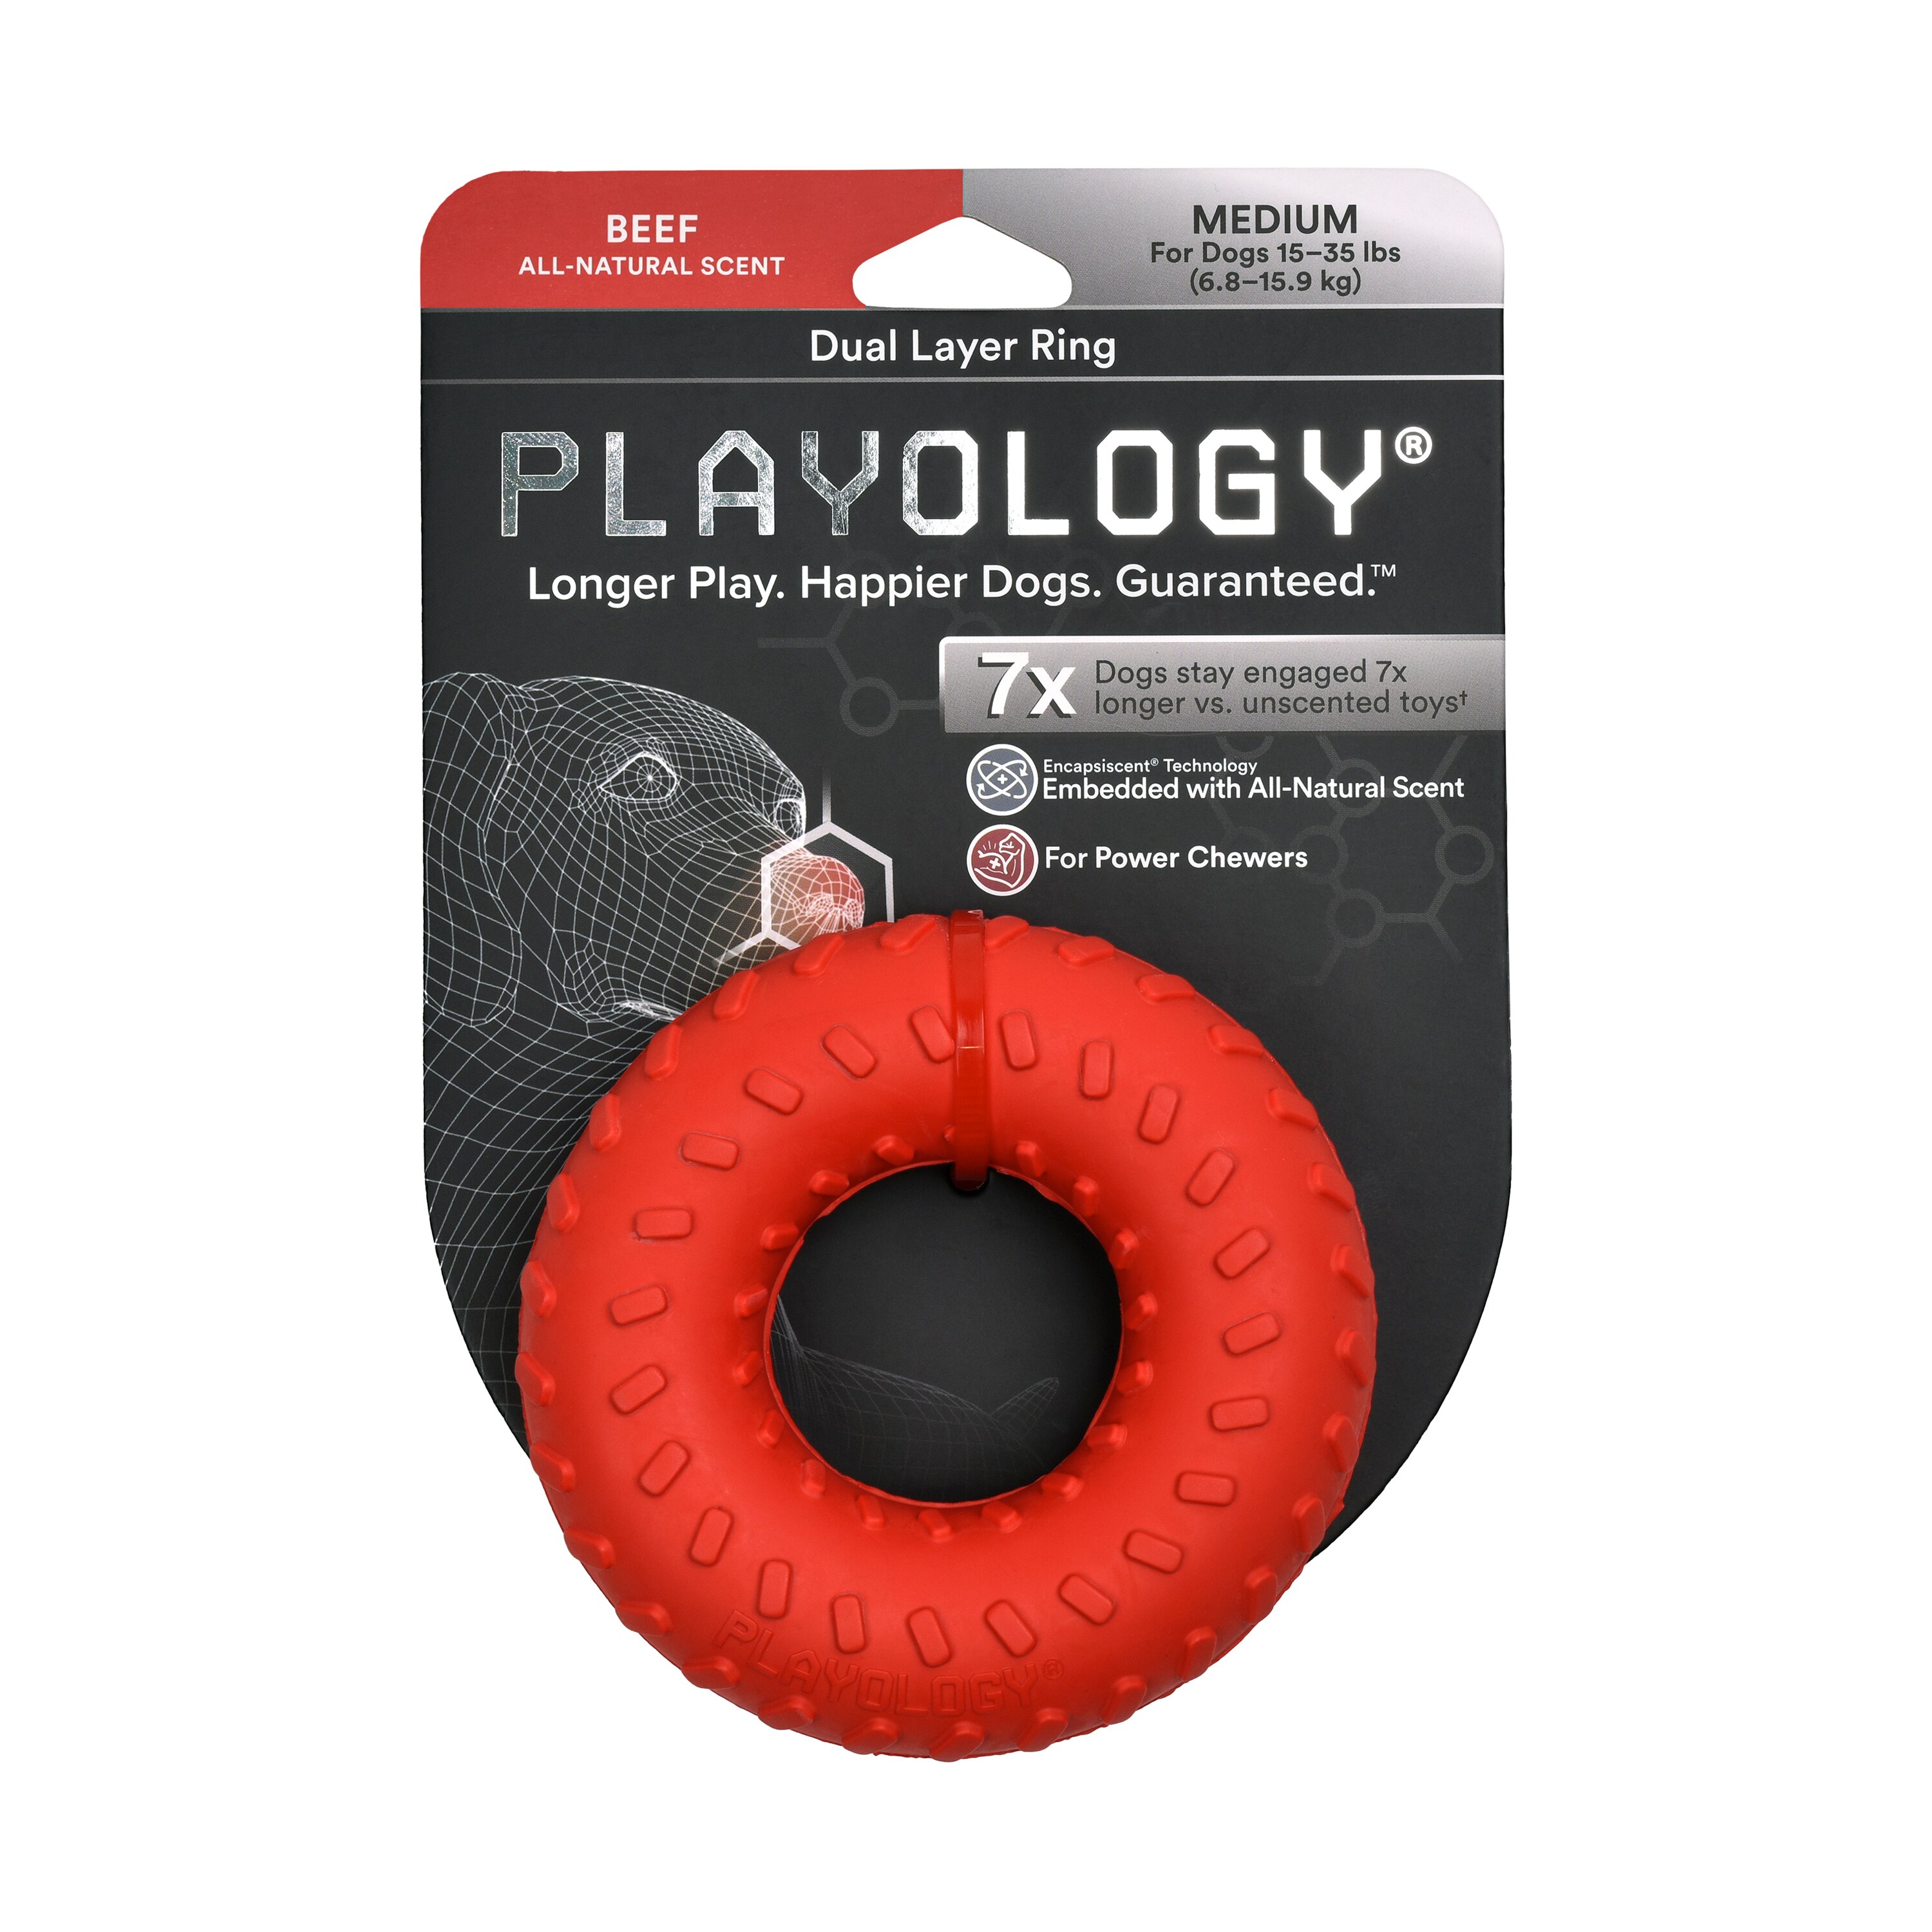 Playology Dual Layer Ring, Beef, Medium